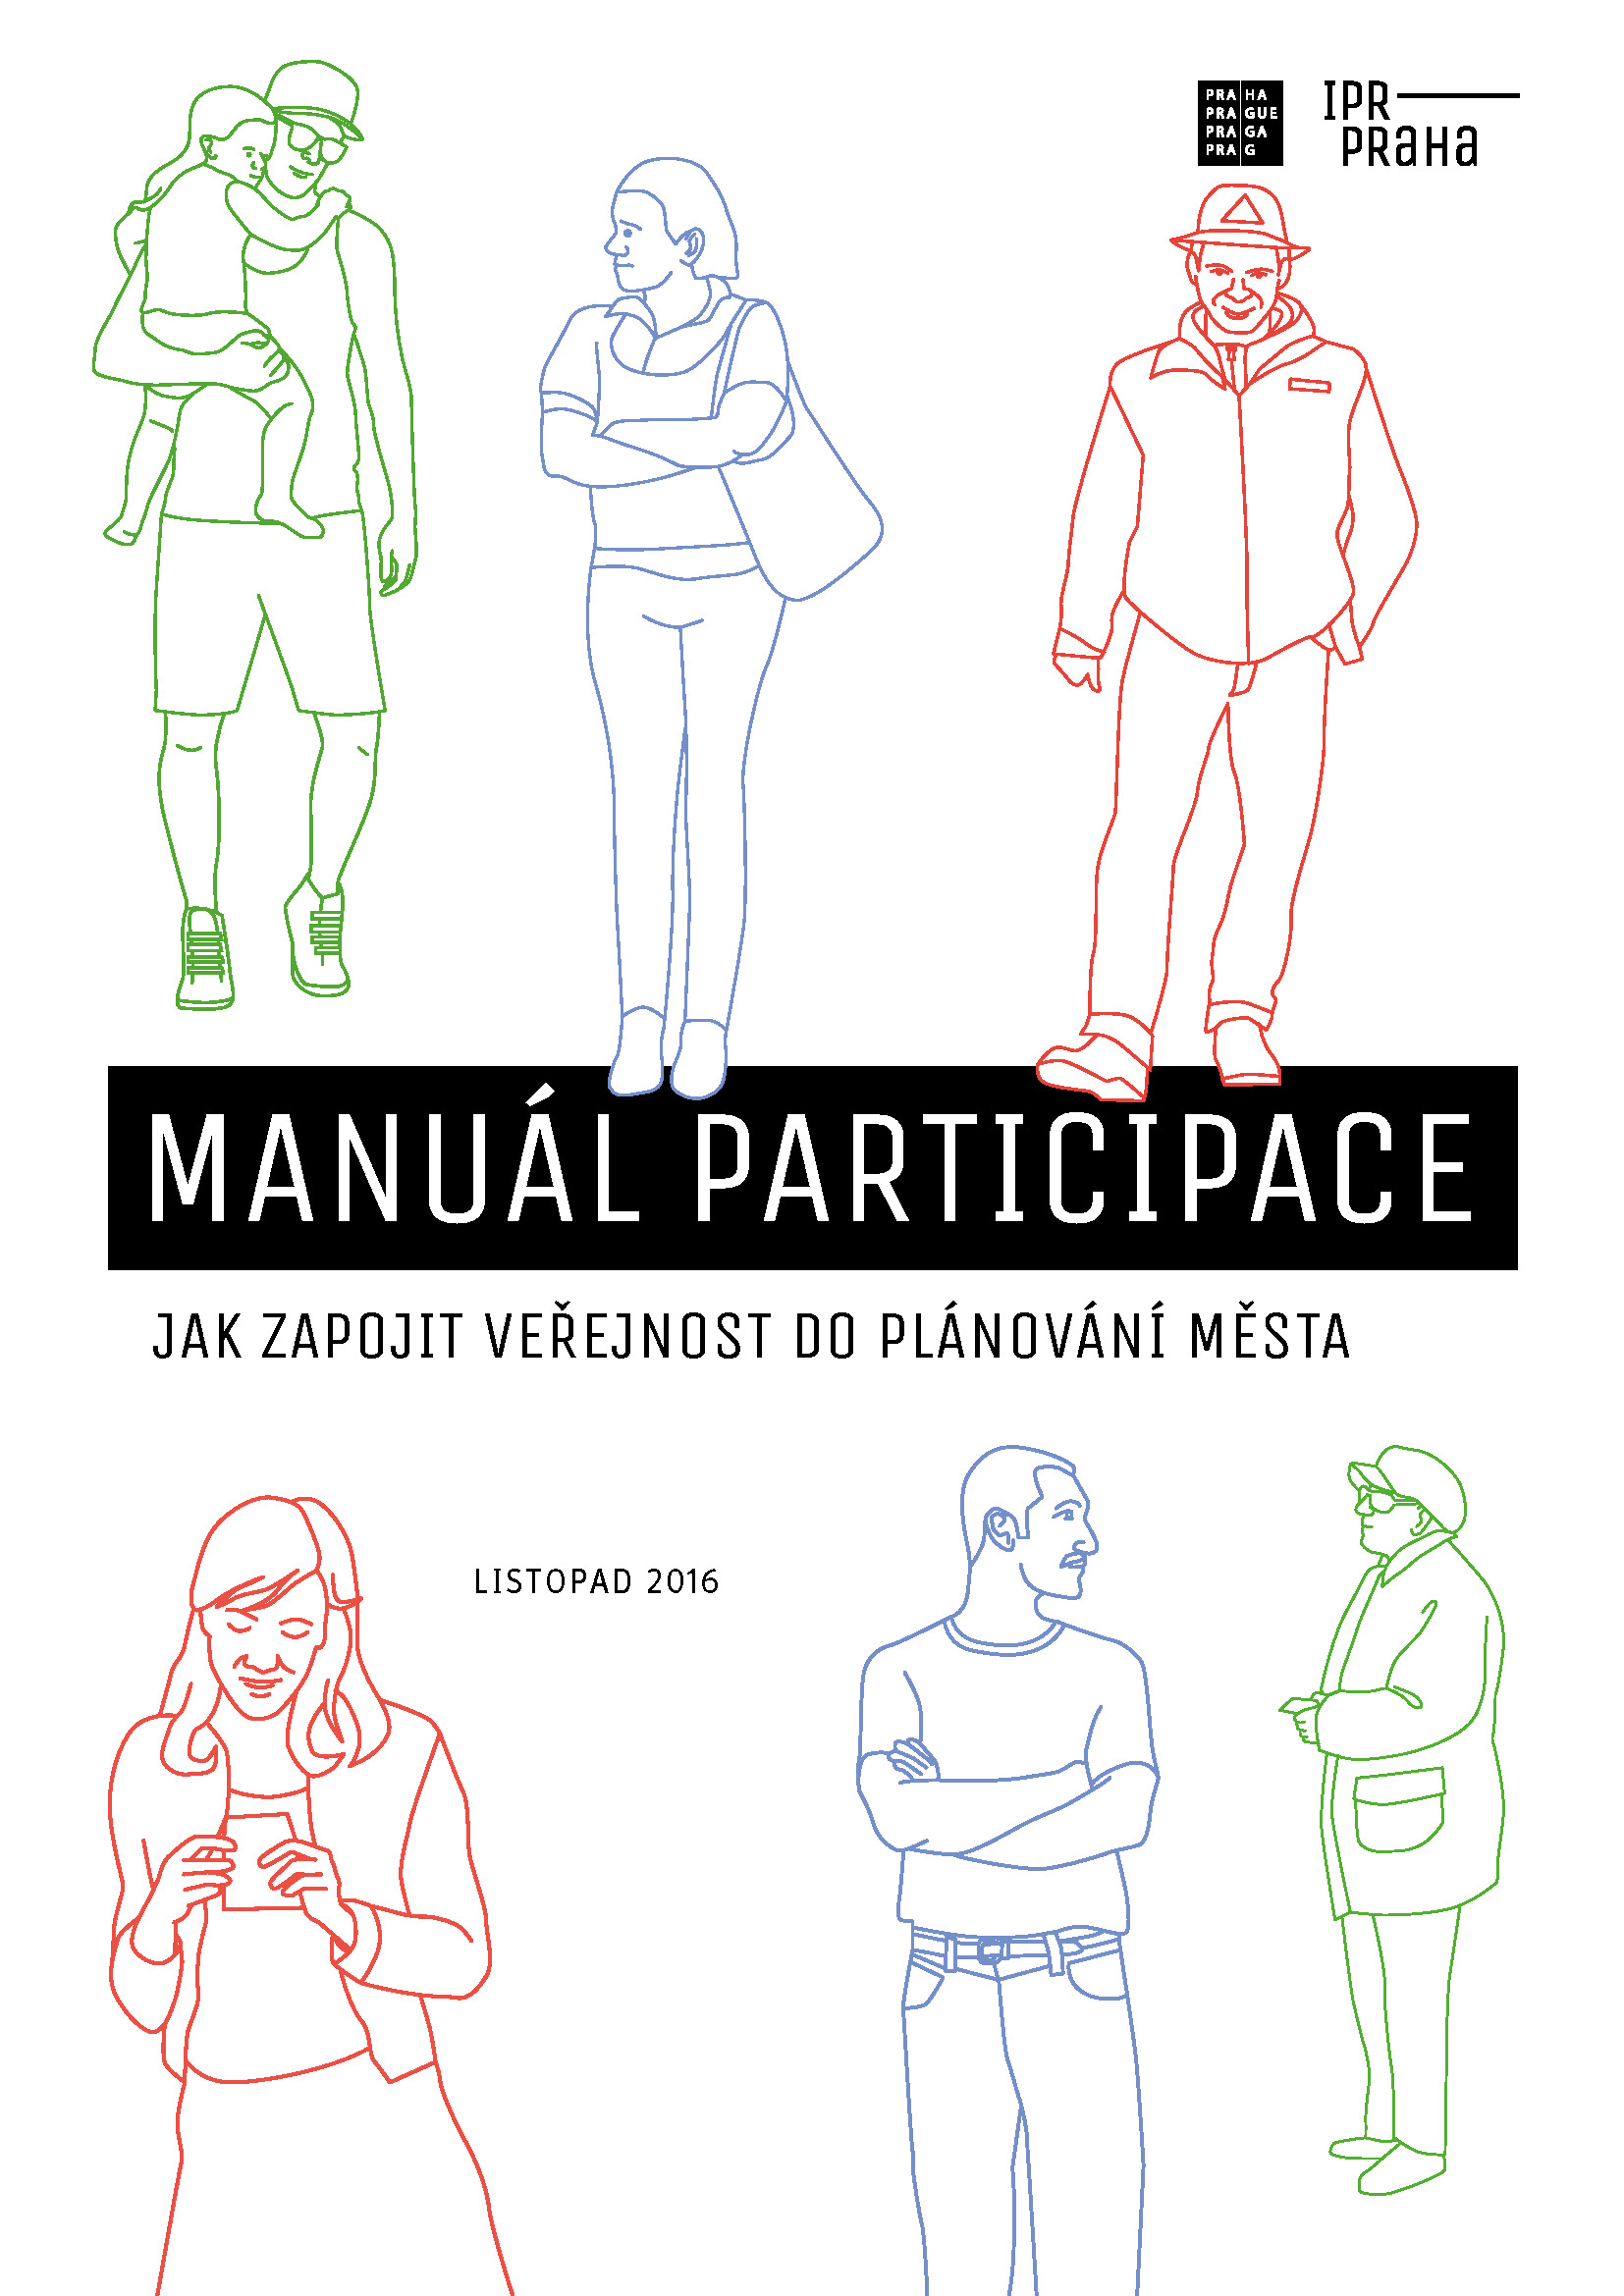  Manuál Participace, jednou z autorek je i Pavla Pelčíková  (c) IPR 